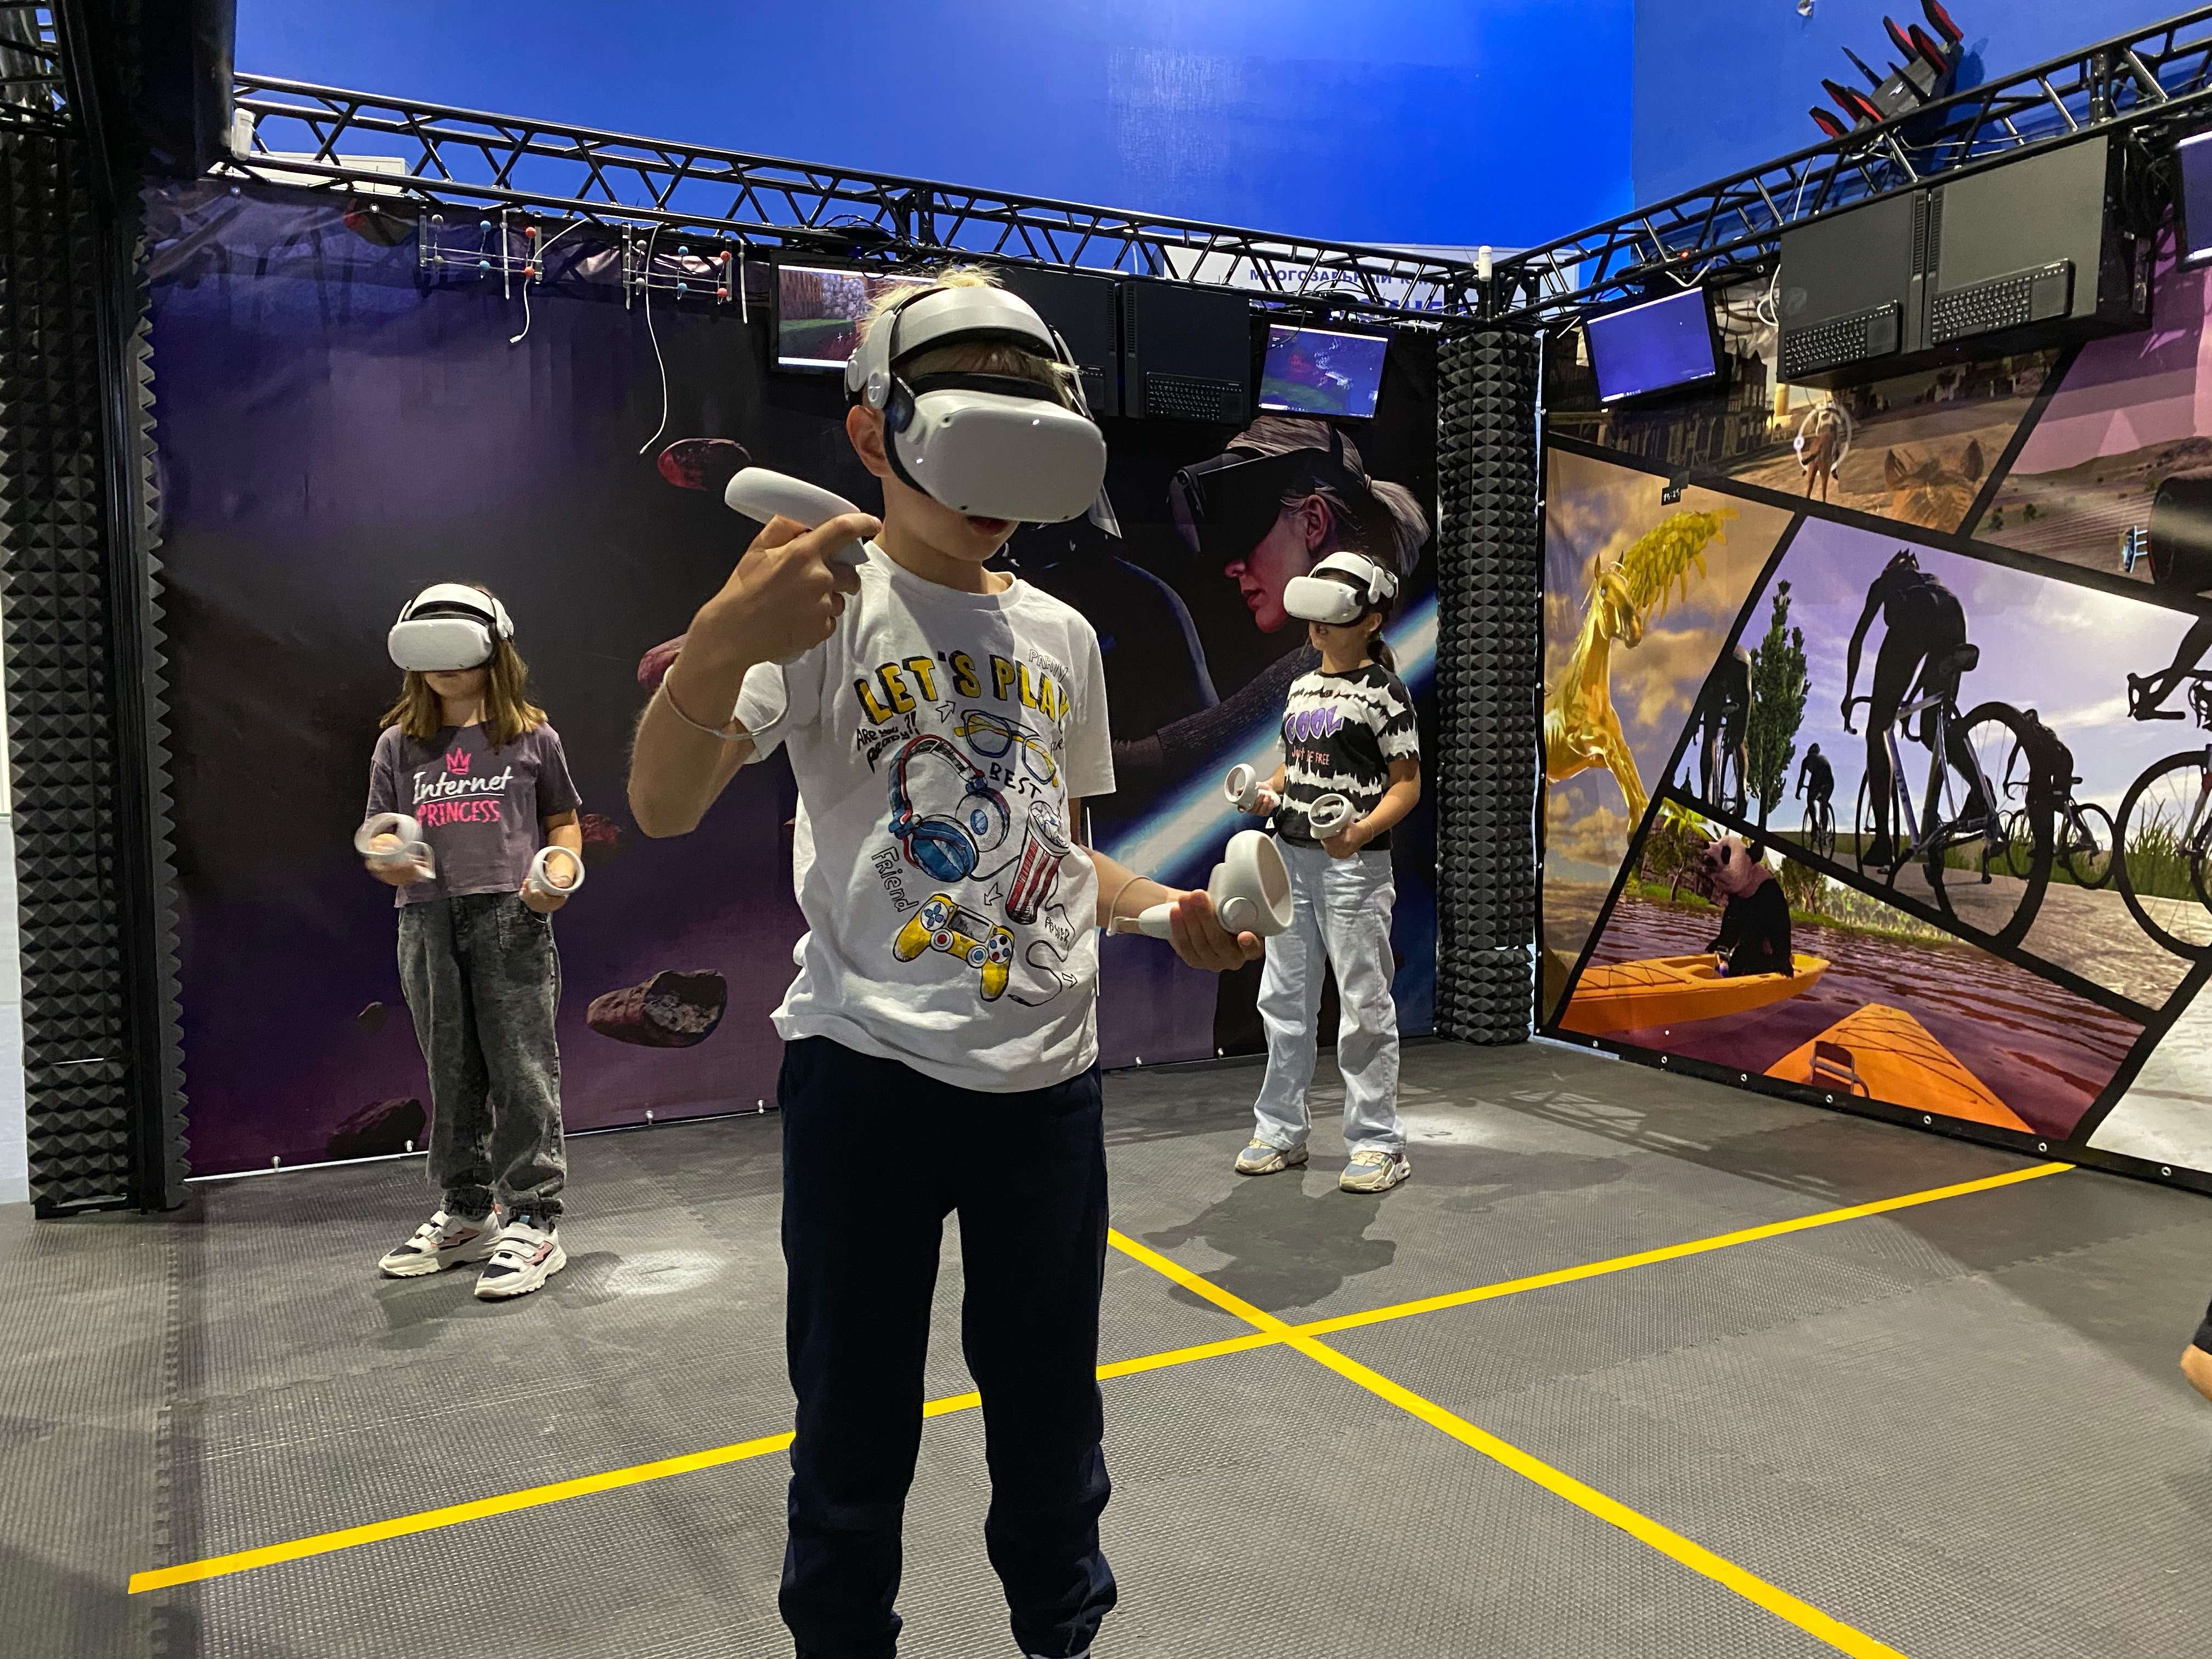 Vr москва играть. Москва VR-экскурсия. Клуб виртуальной реальности Некрасовка отзывы.